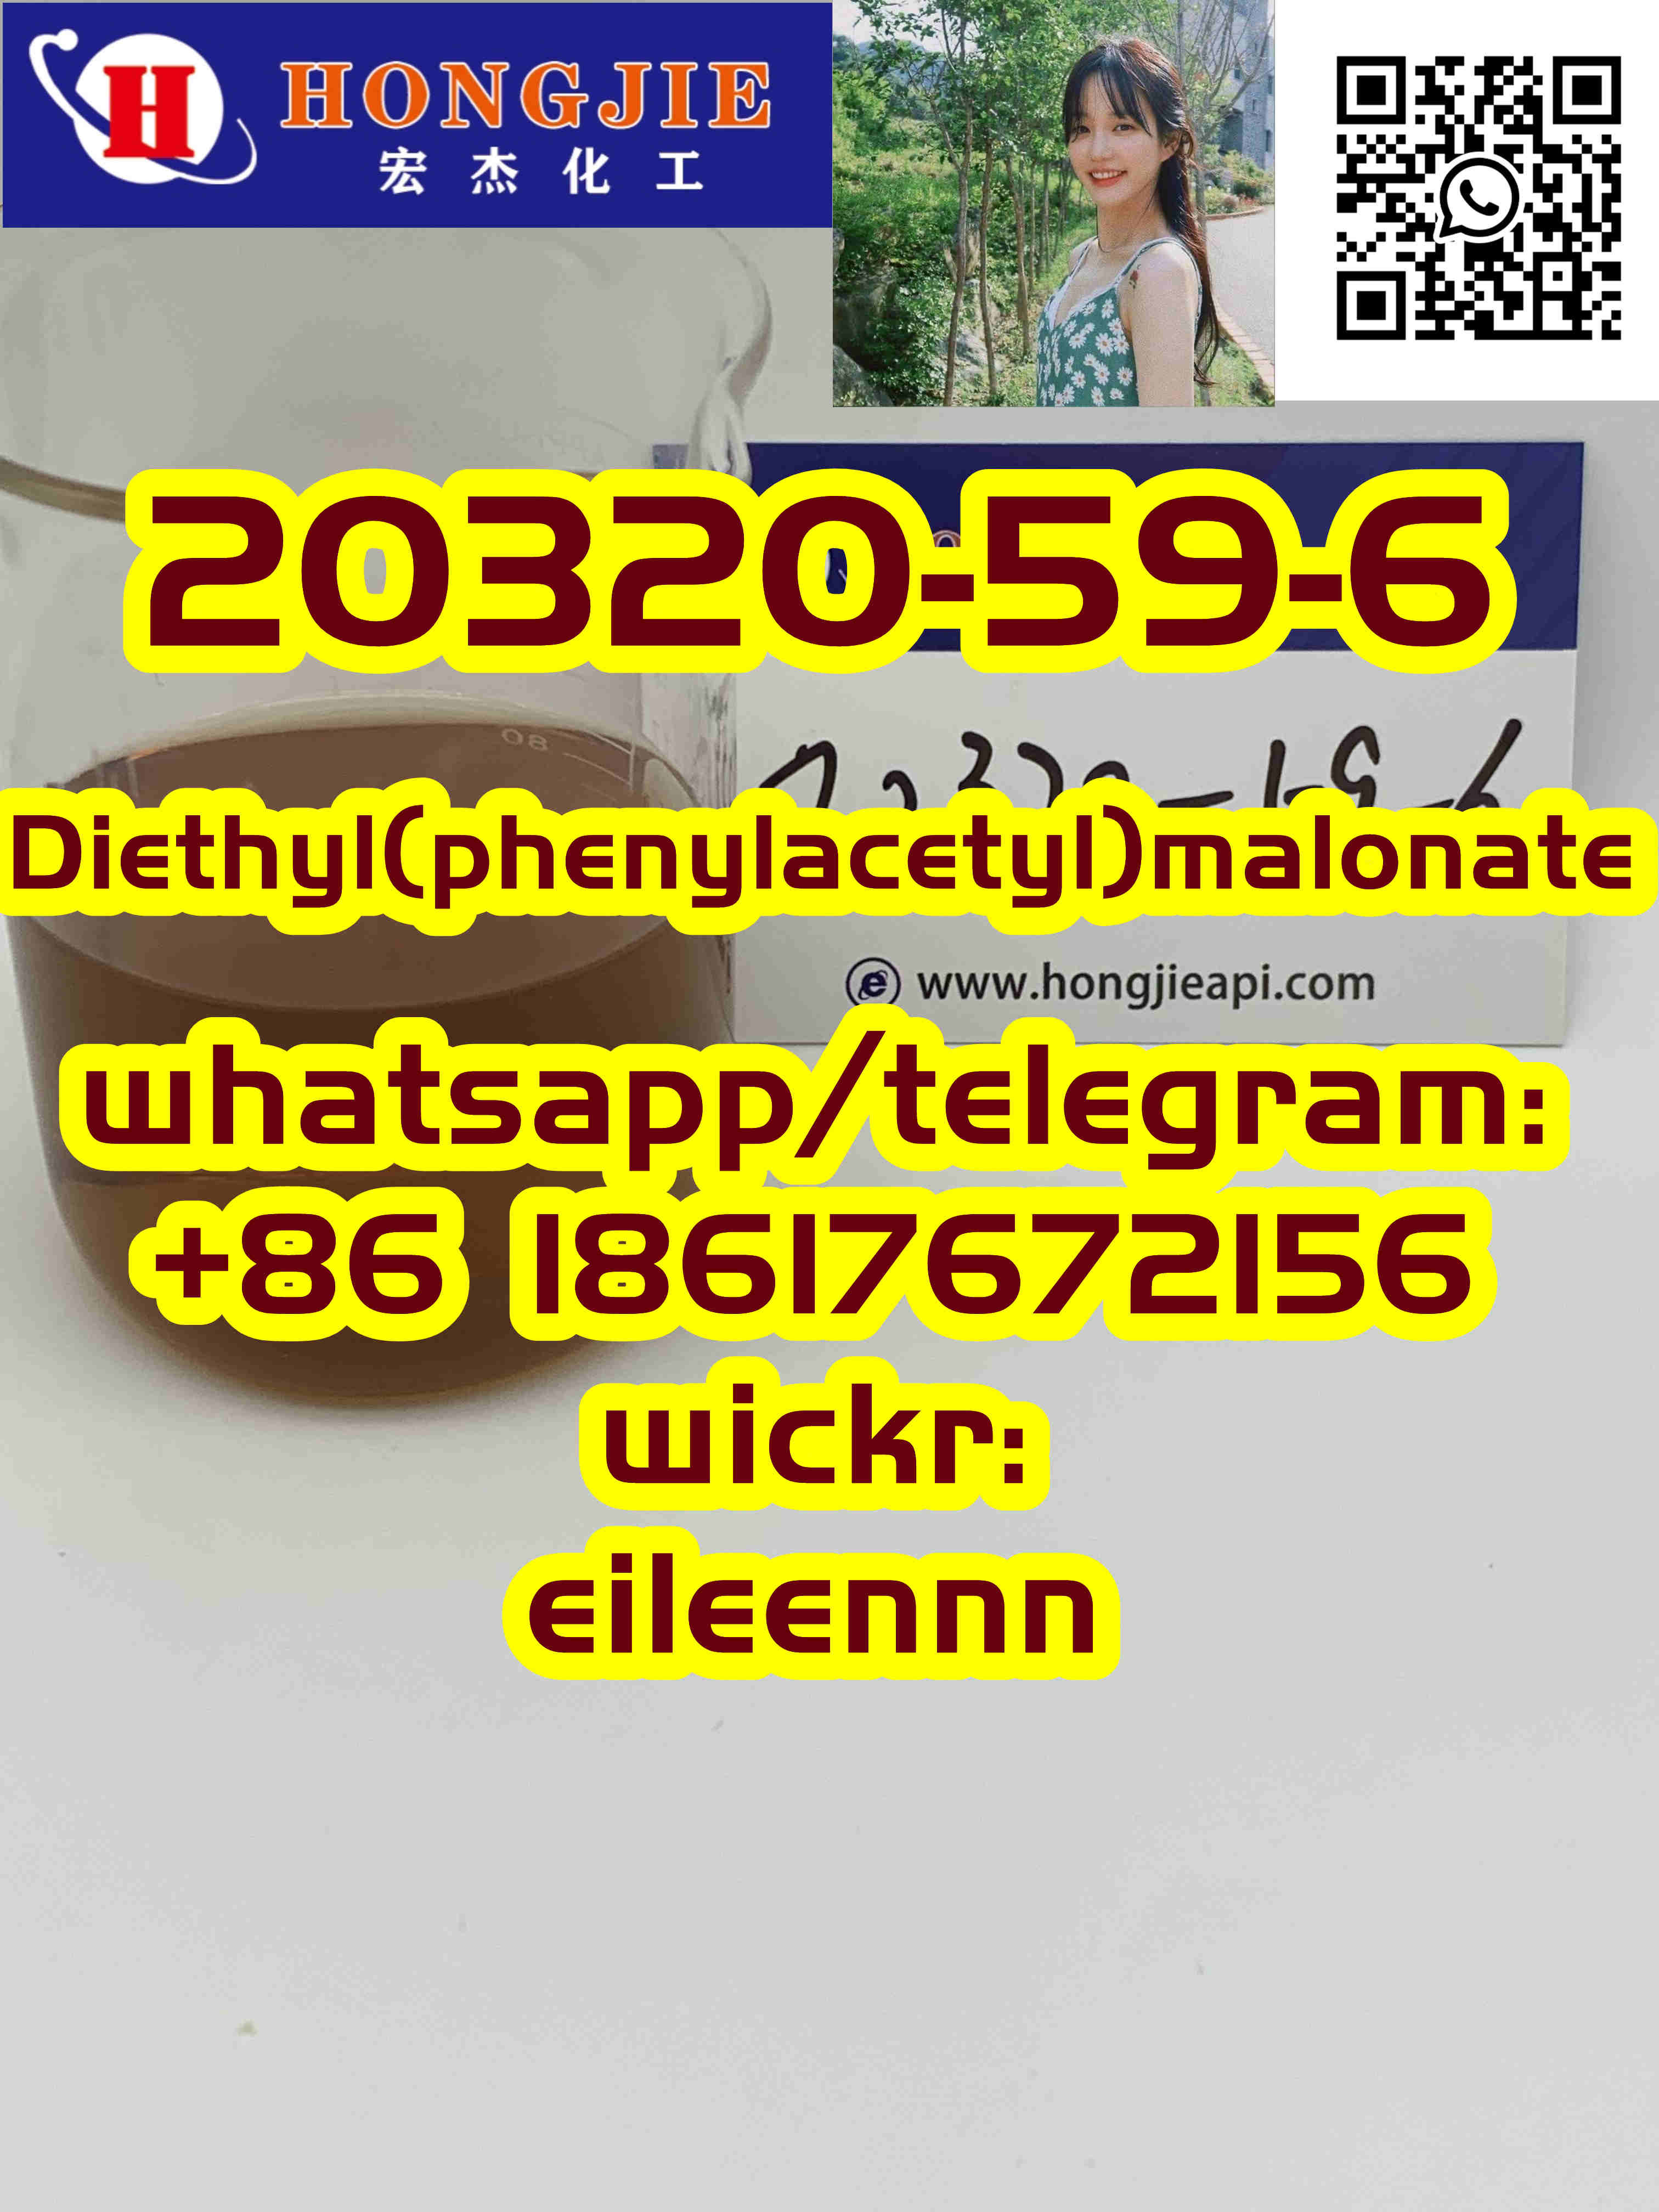 20320-59-6 Diethyl(phenylacetyl)malonate Bulk supply - photo